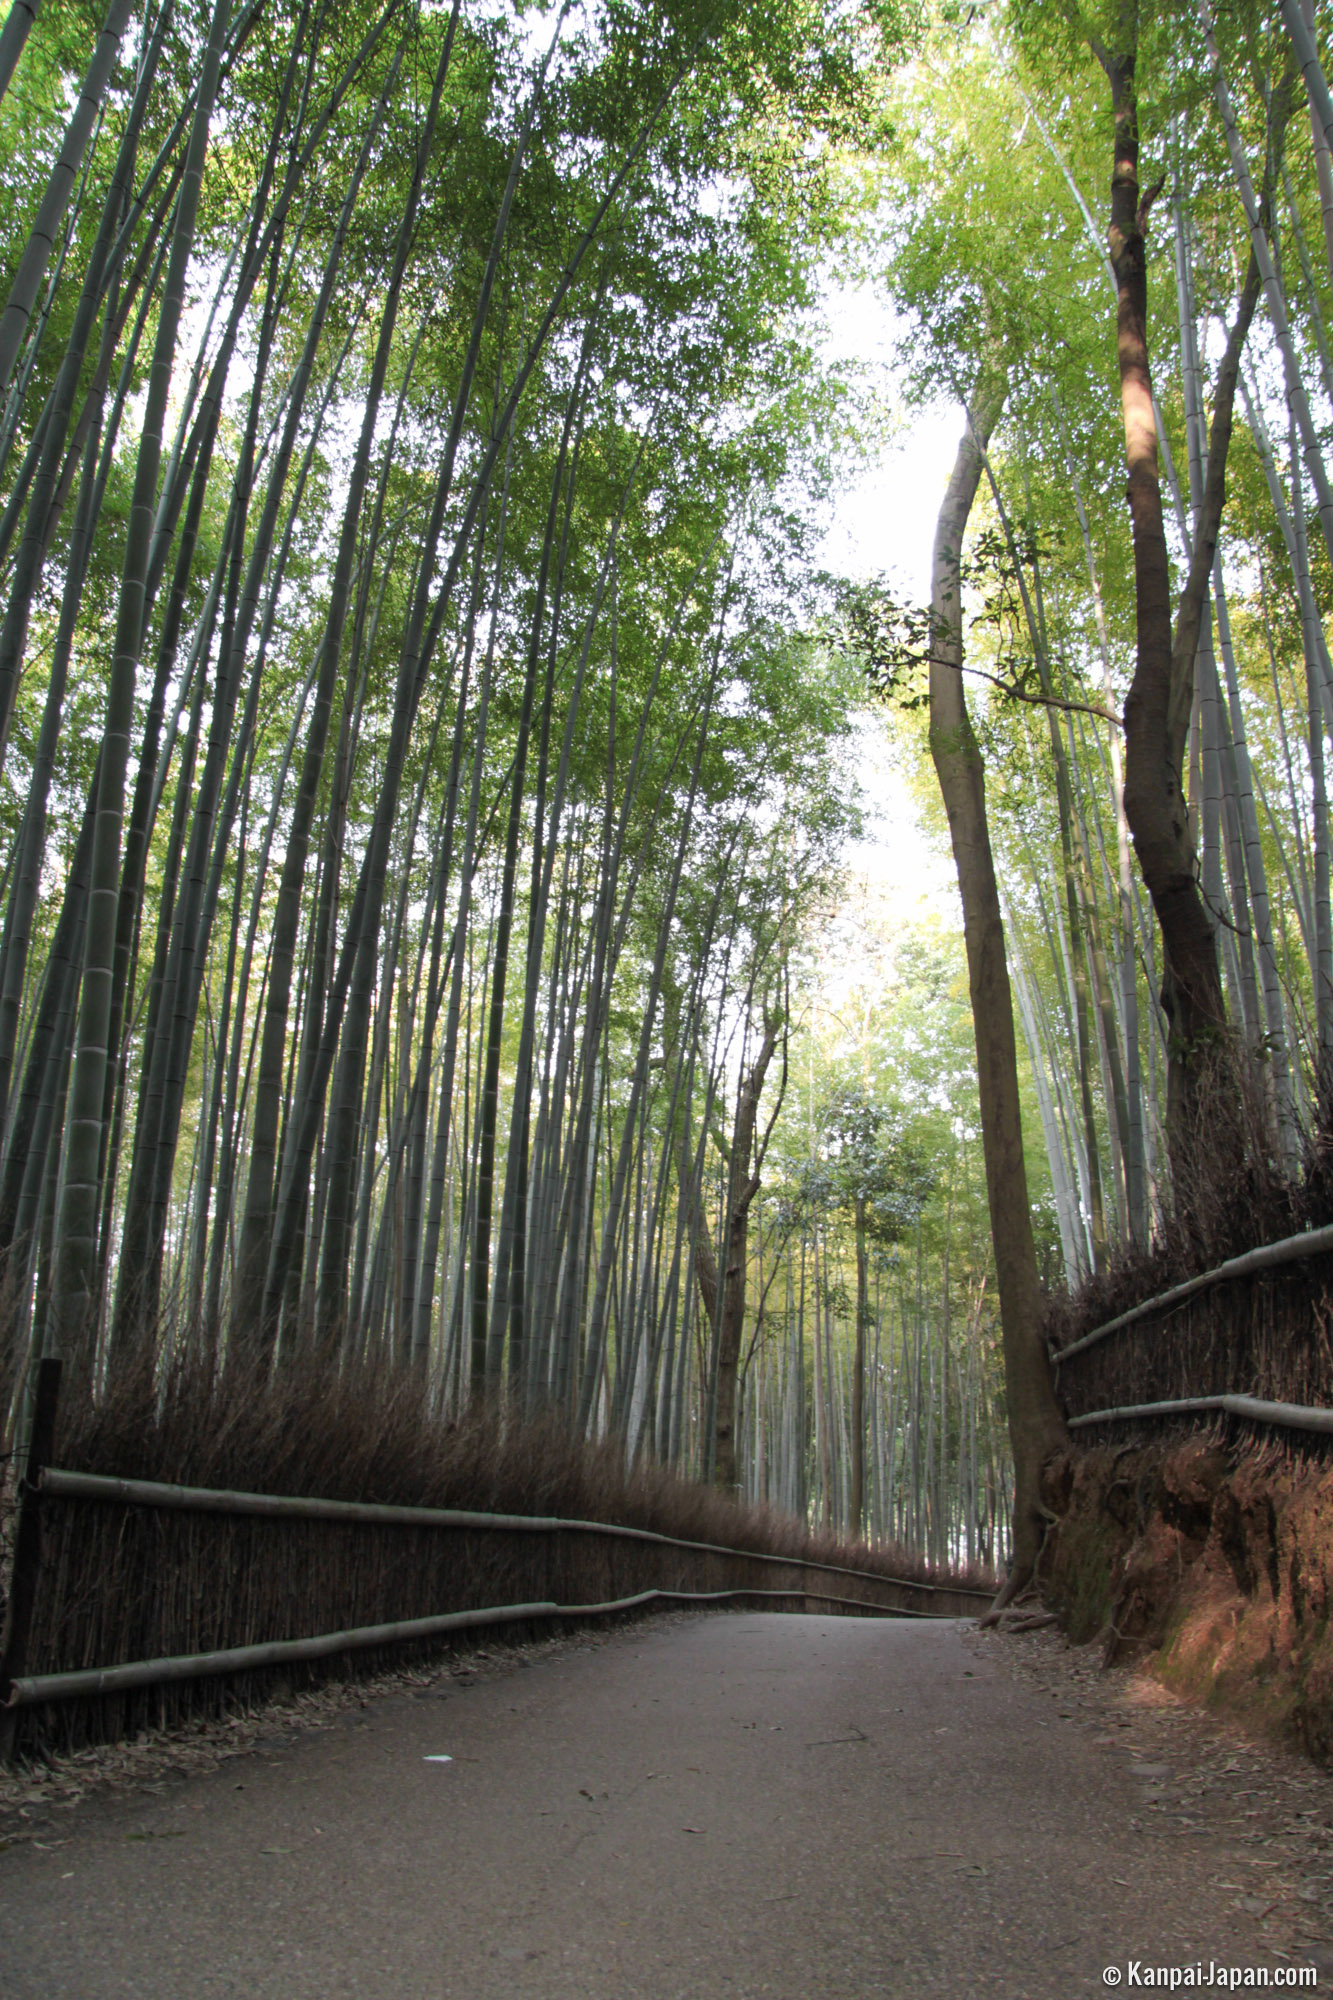 Arashiyama Bamboo Grove - The Sagano Bamboo Forest in Kyoto